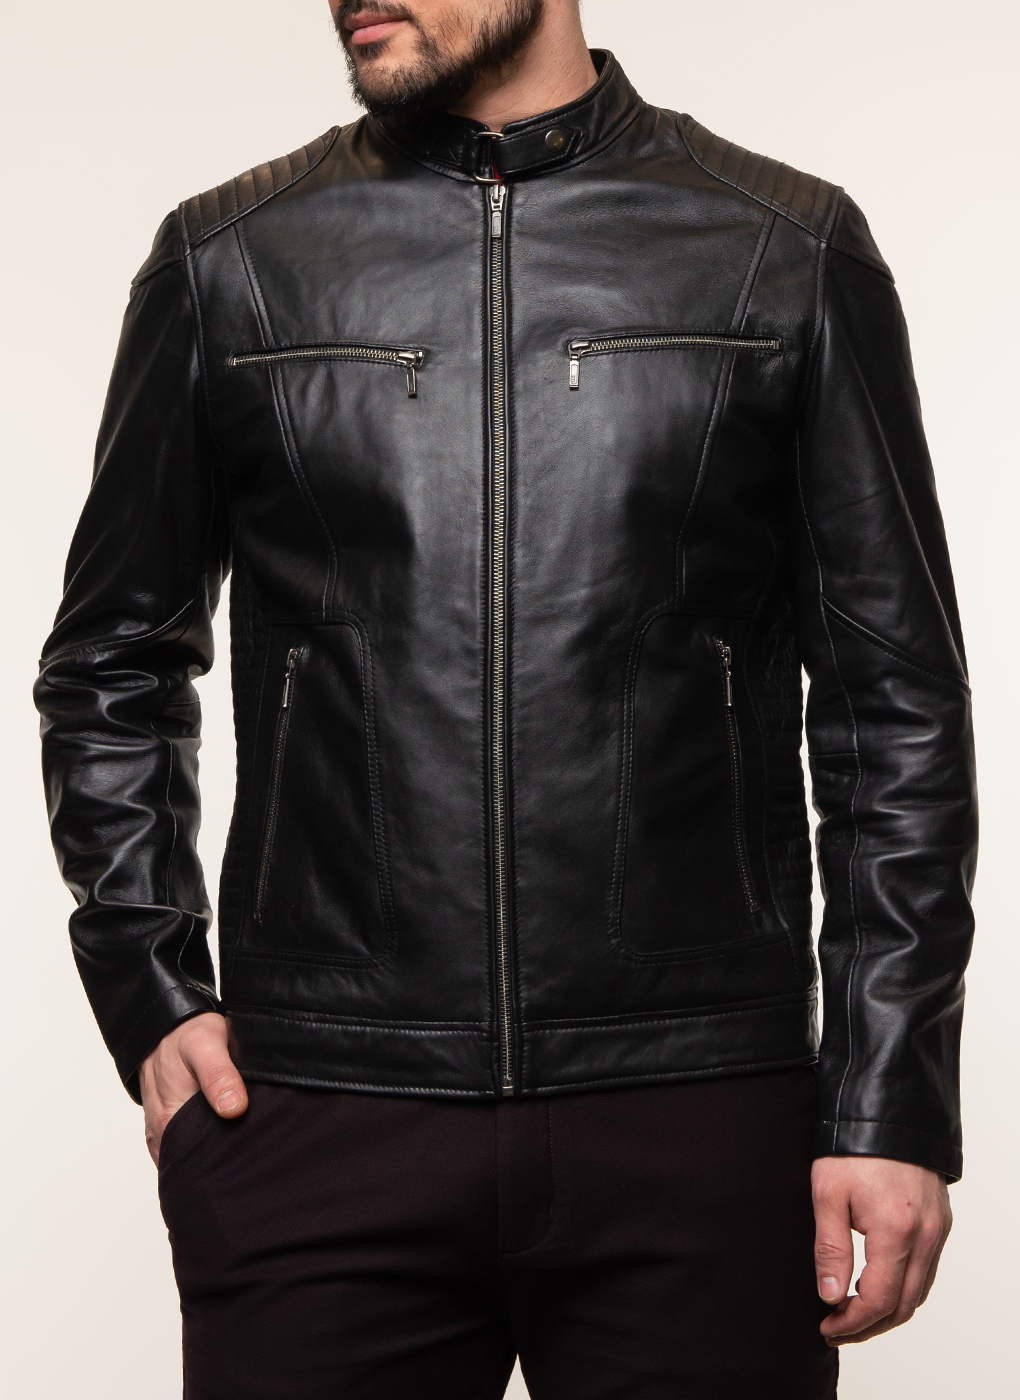 Кожаная куртка мужская Каляев 62648 черная 58 RU